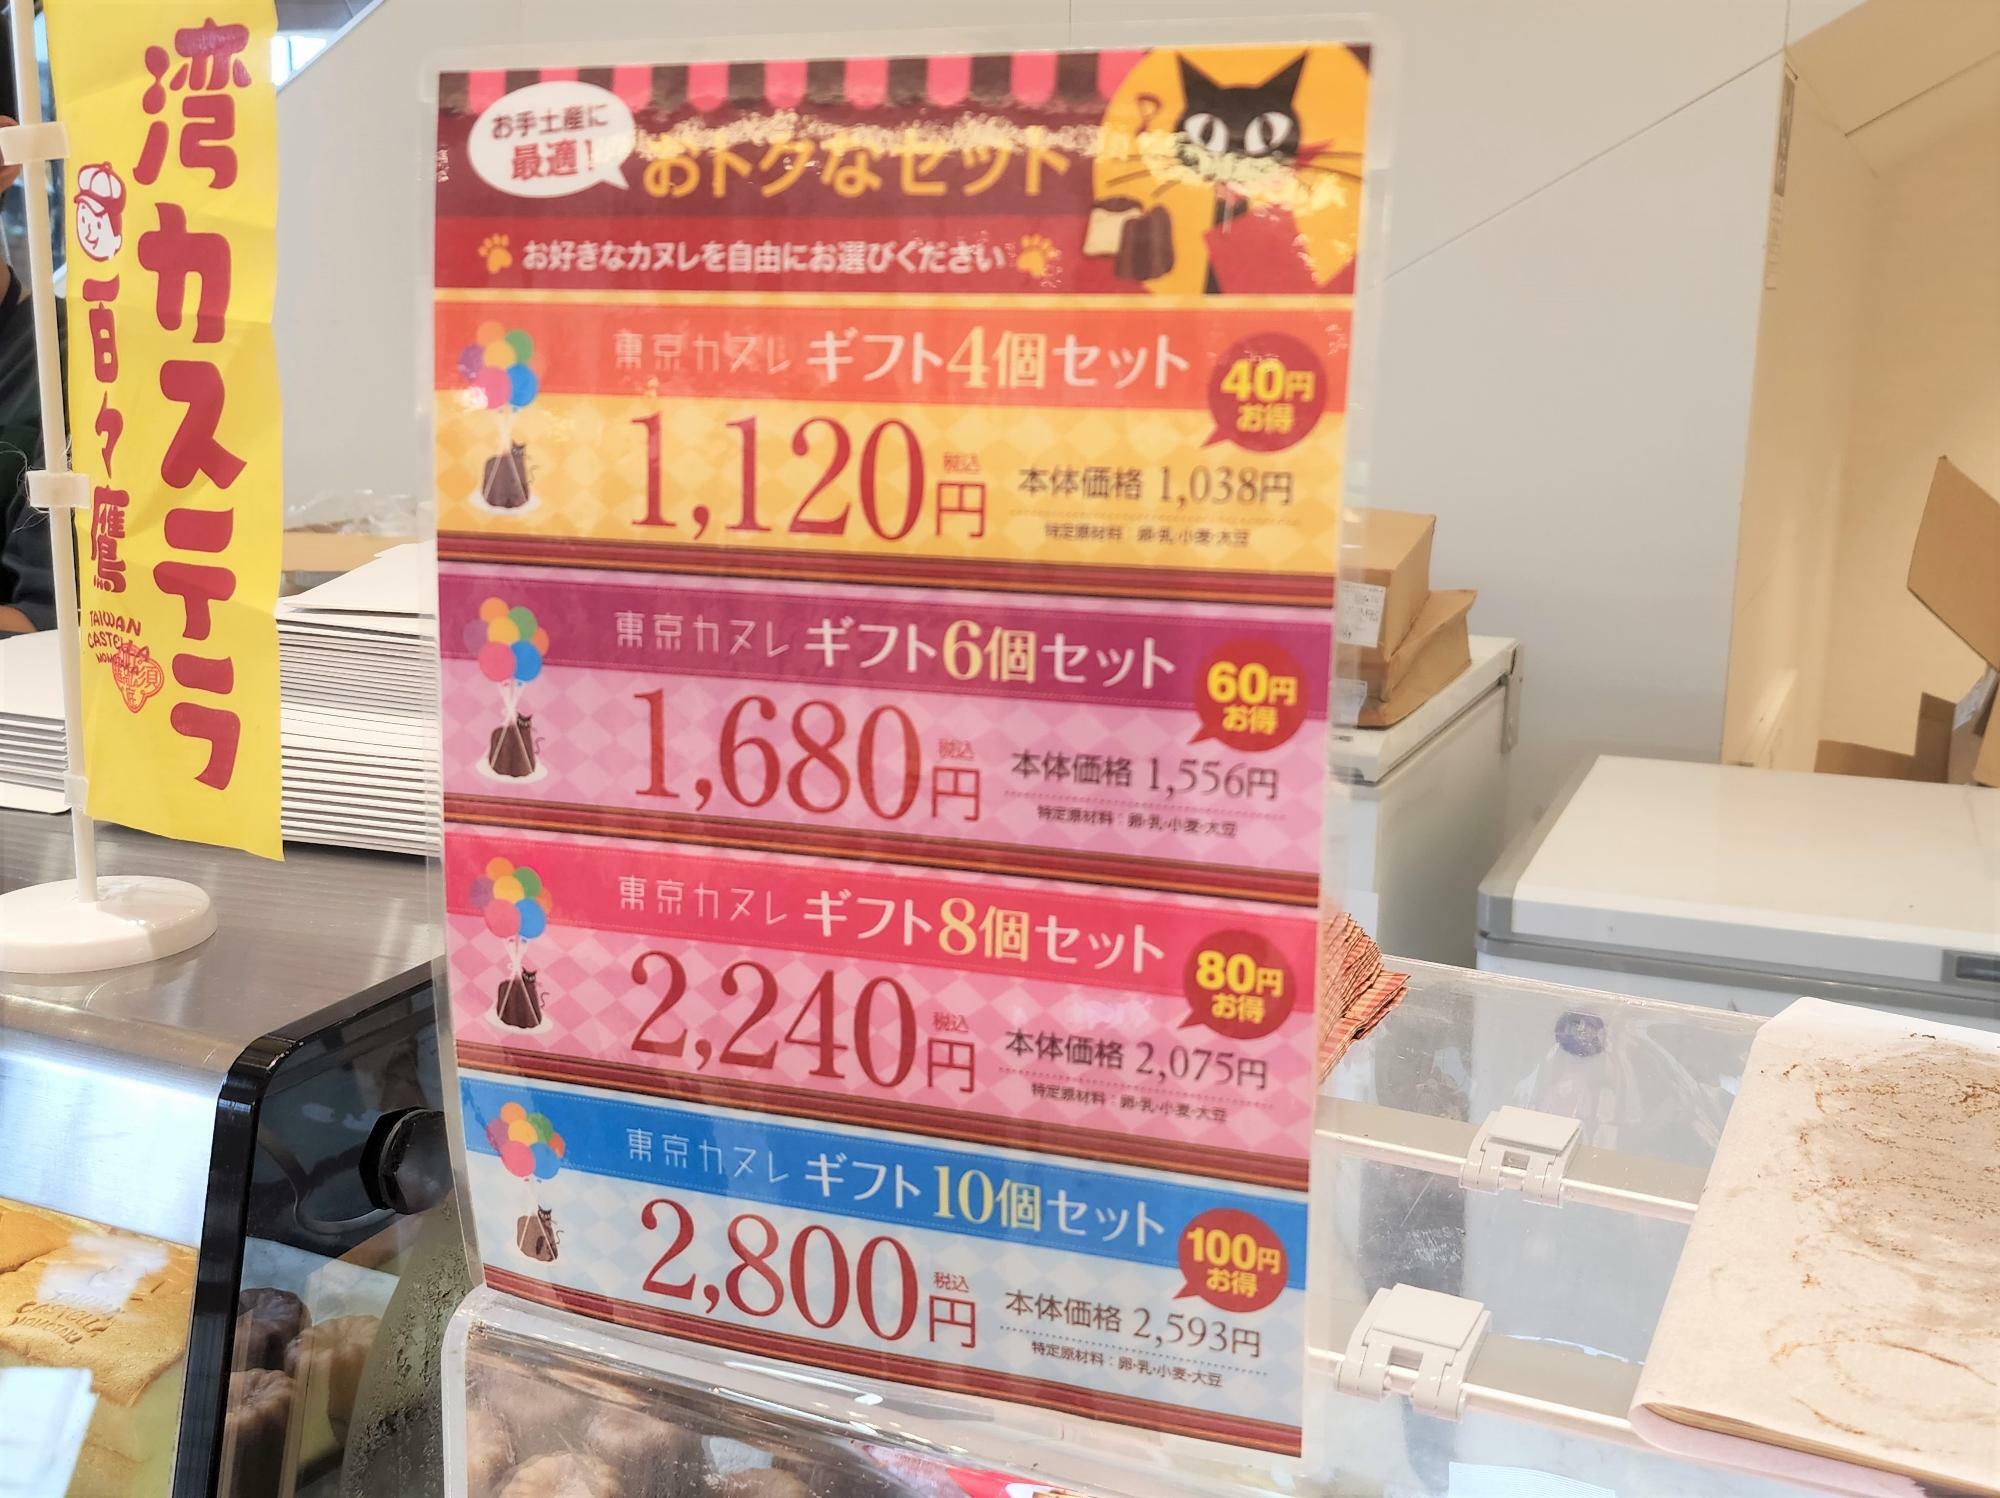 イオンモール徳島の催事「東京カヌレ」には、お得なギフトセットもある。